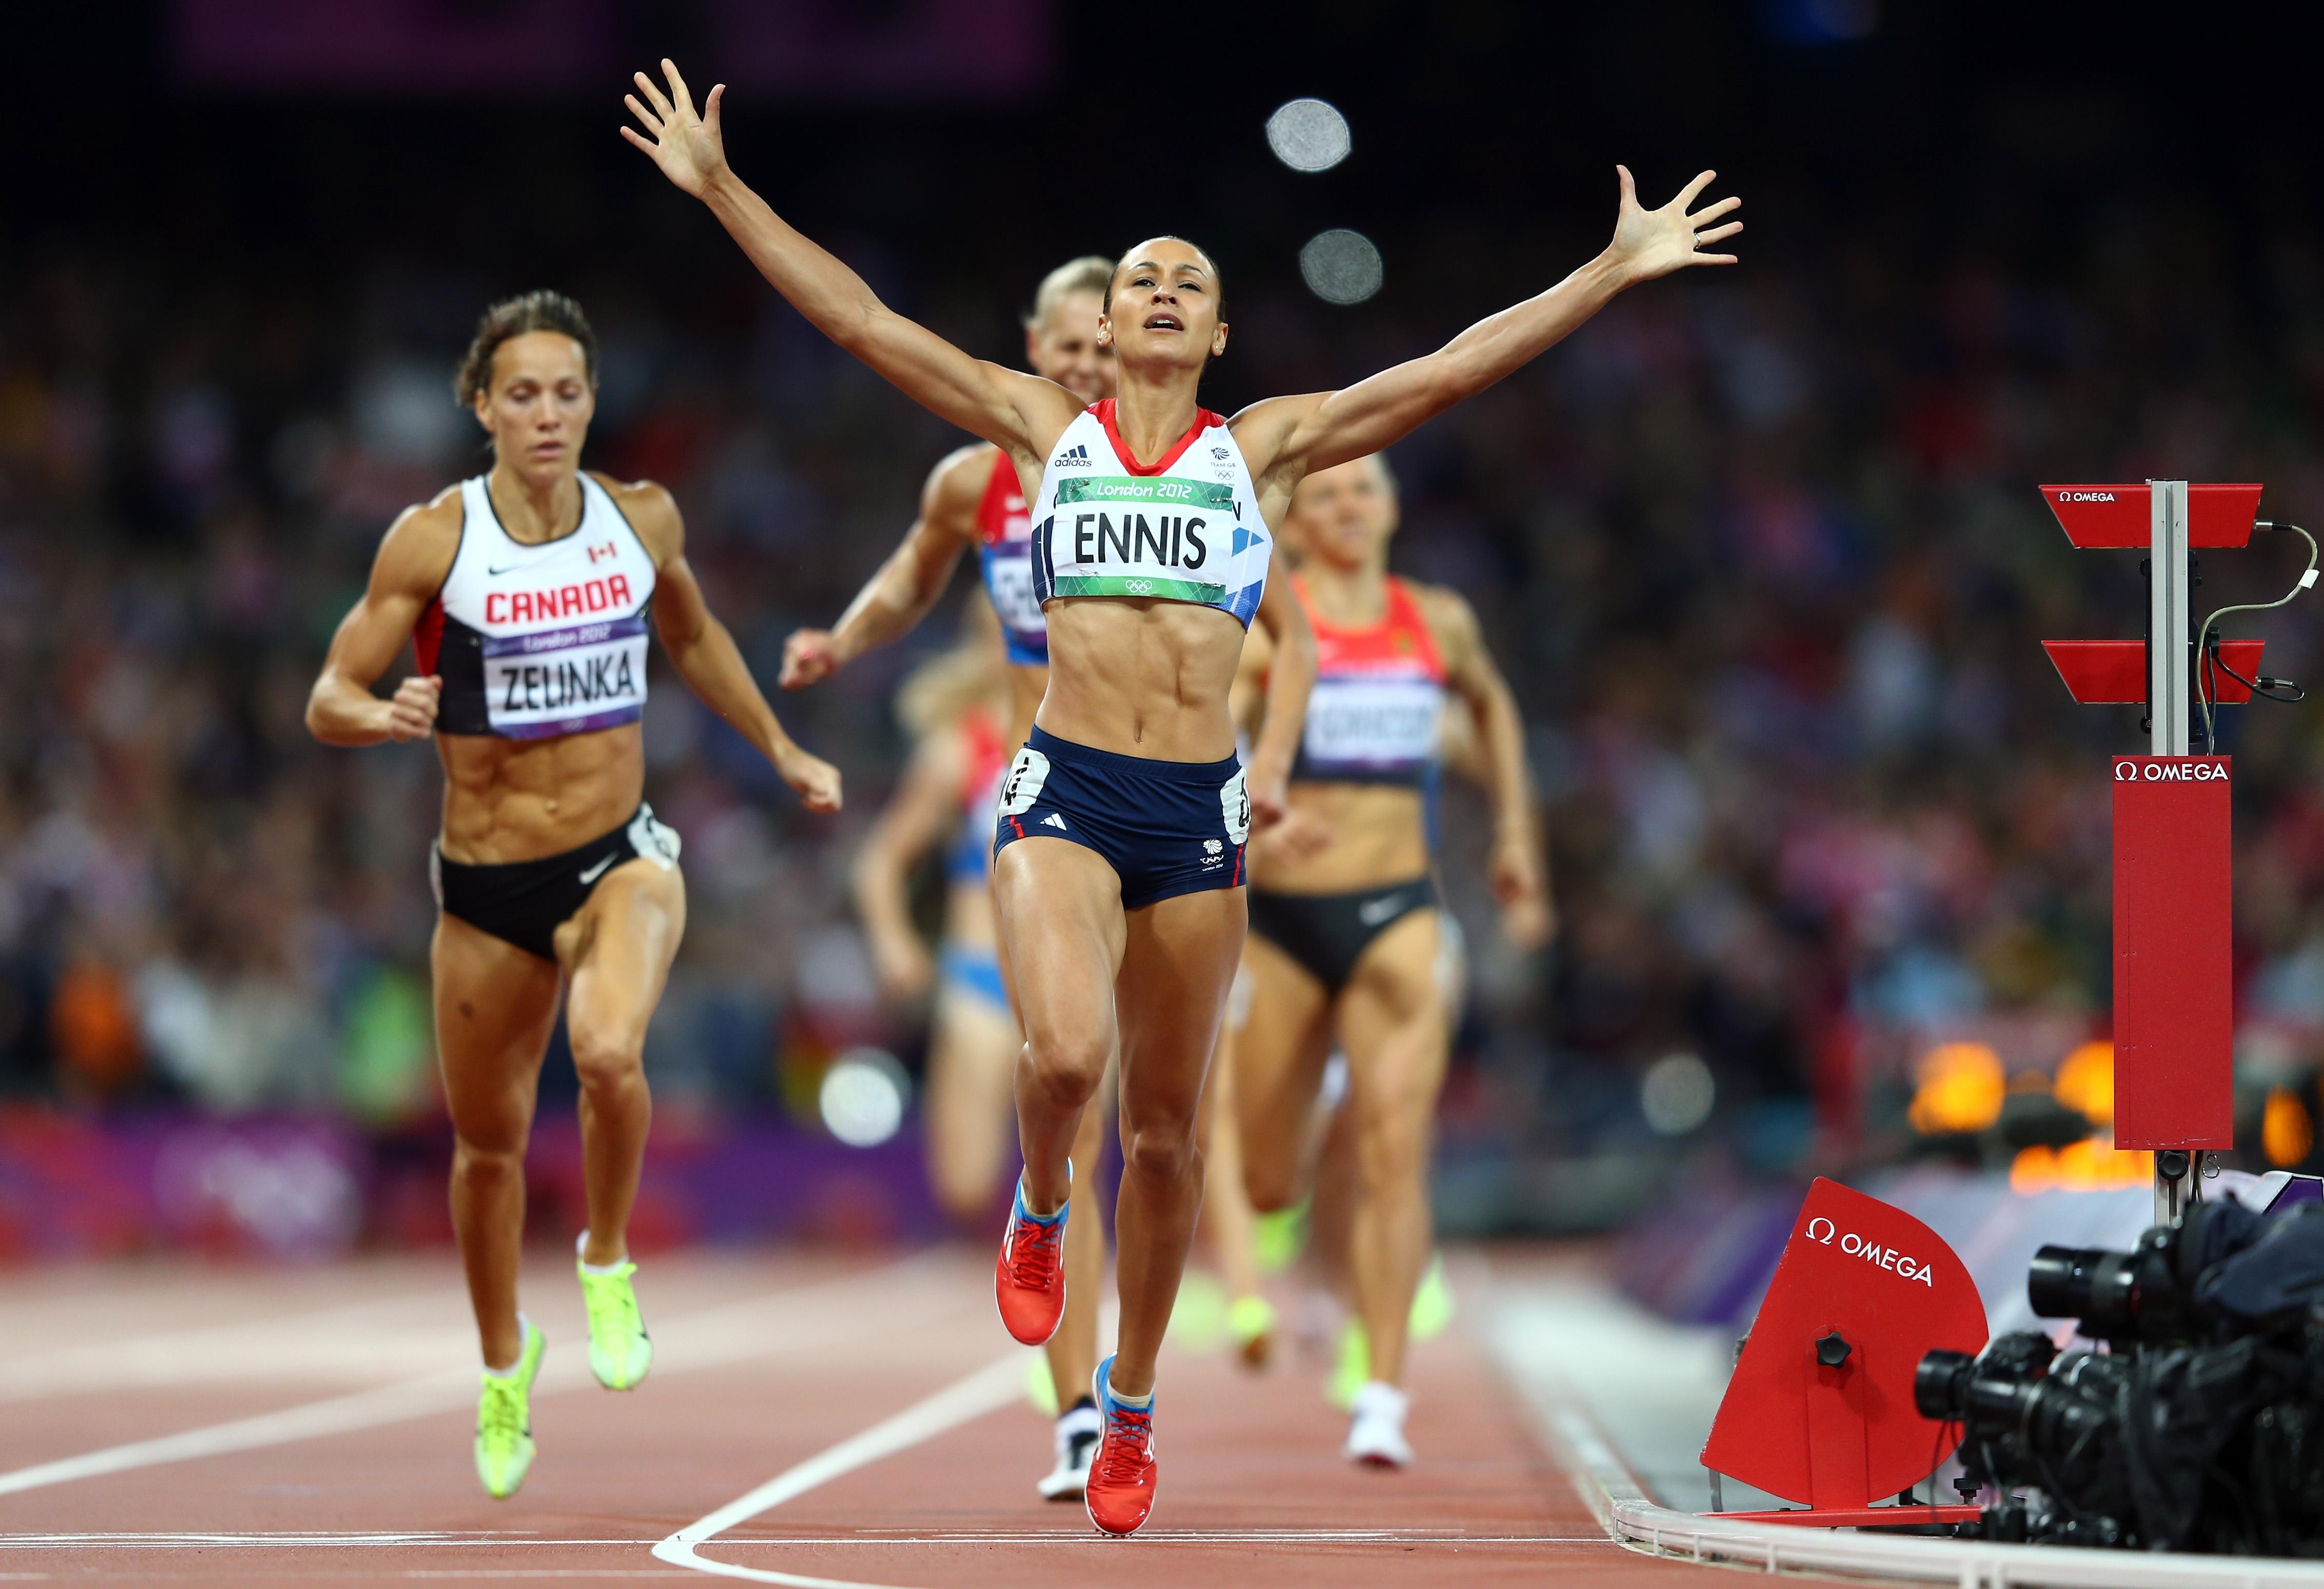 Оба два спортсмена. Jessica Ennis. Спортсмен на финише. Спорт высоких достижений. Эмоции Победы в спорте.